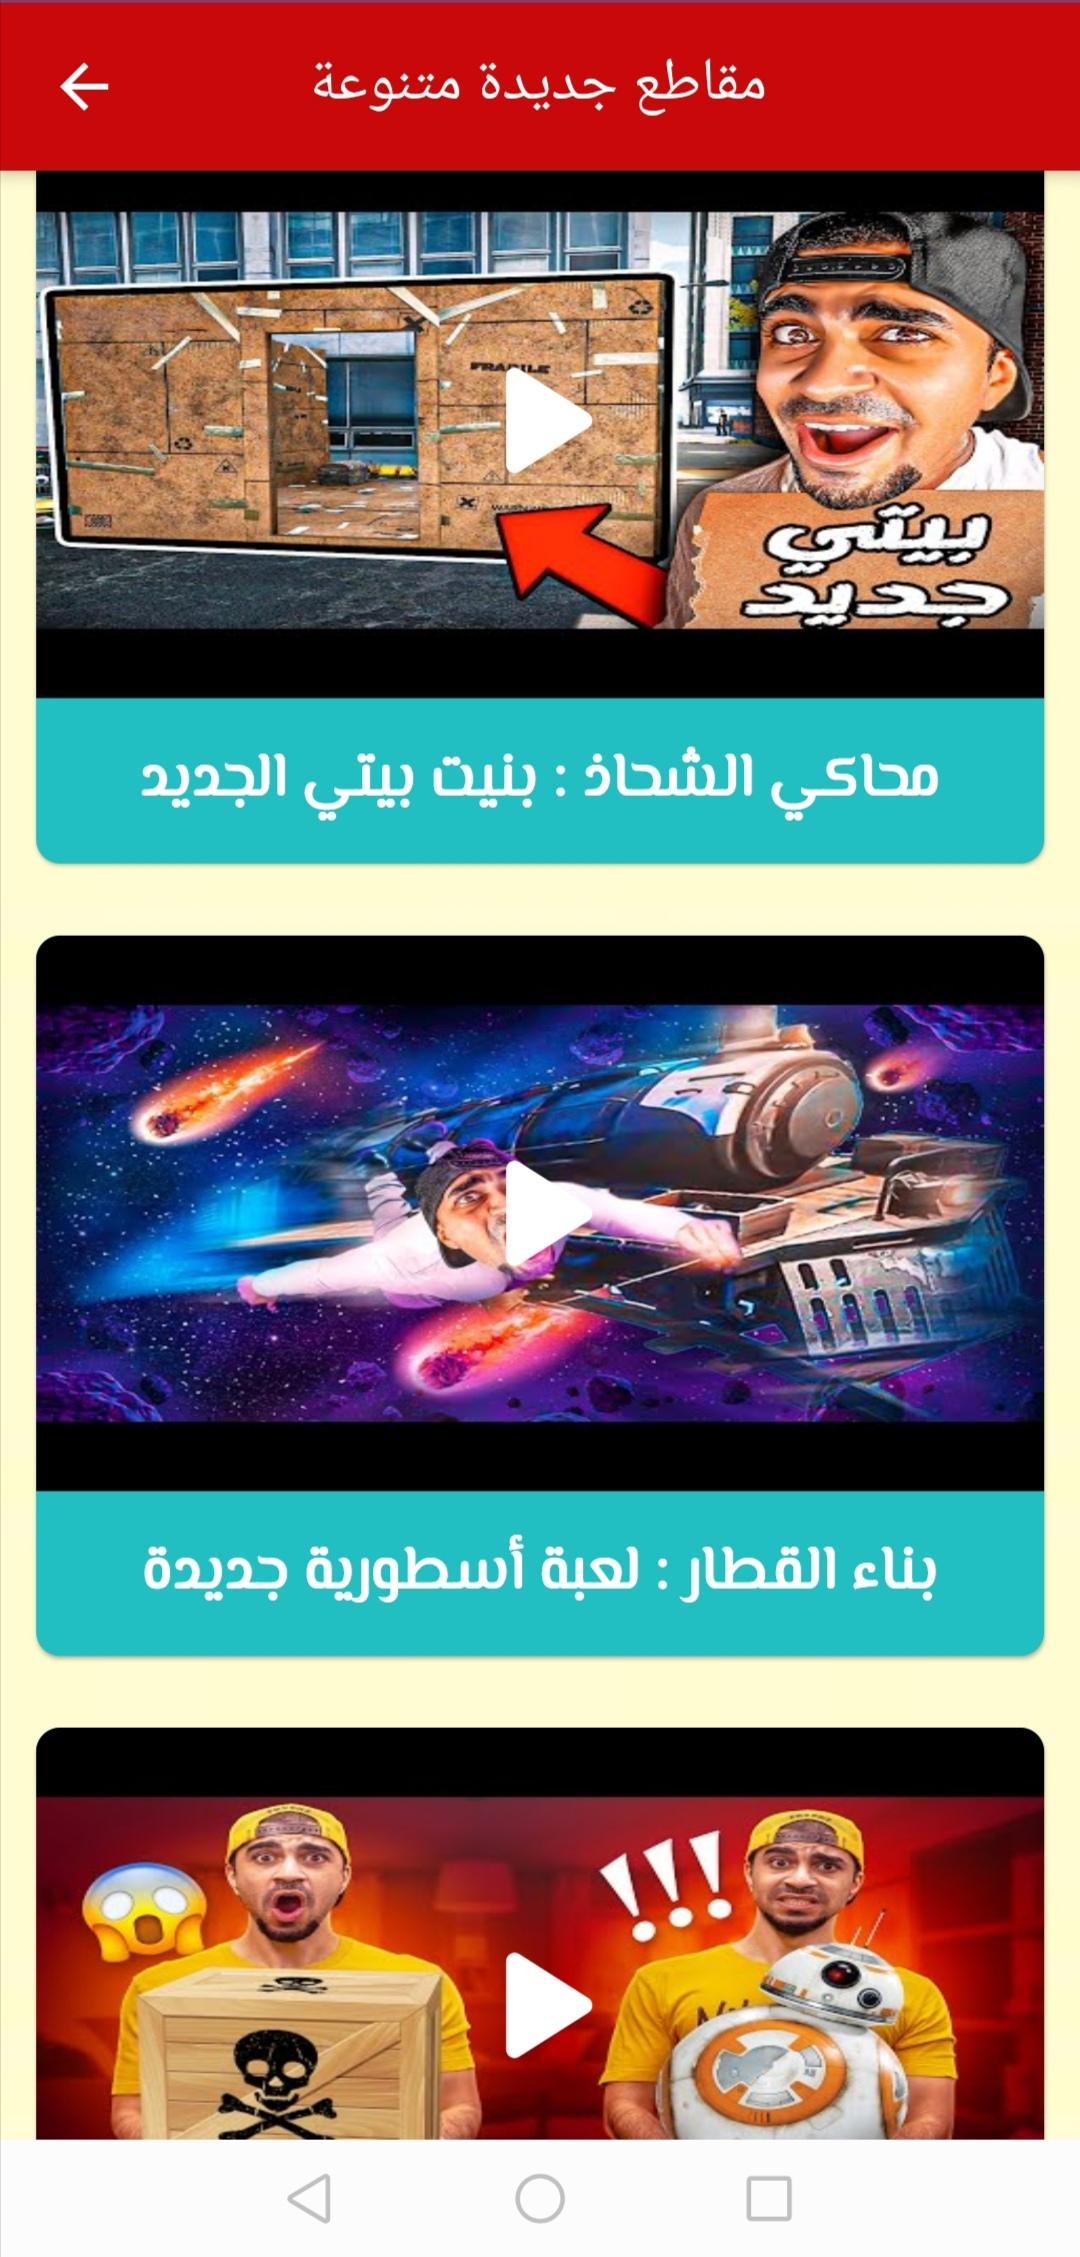 سيد شبكة العاب العرب APK for Android Download